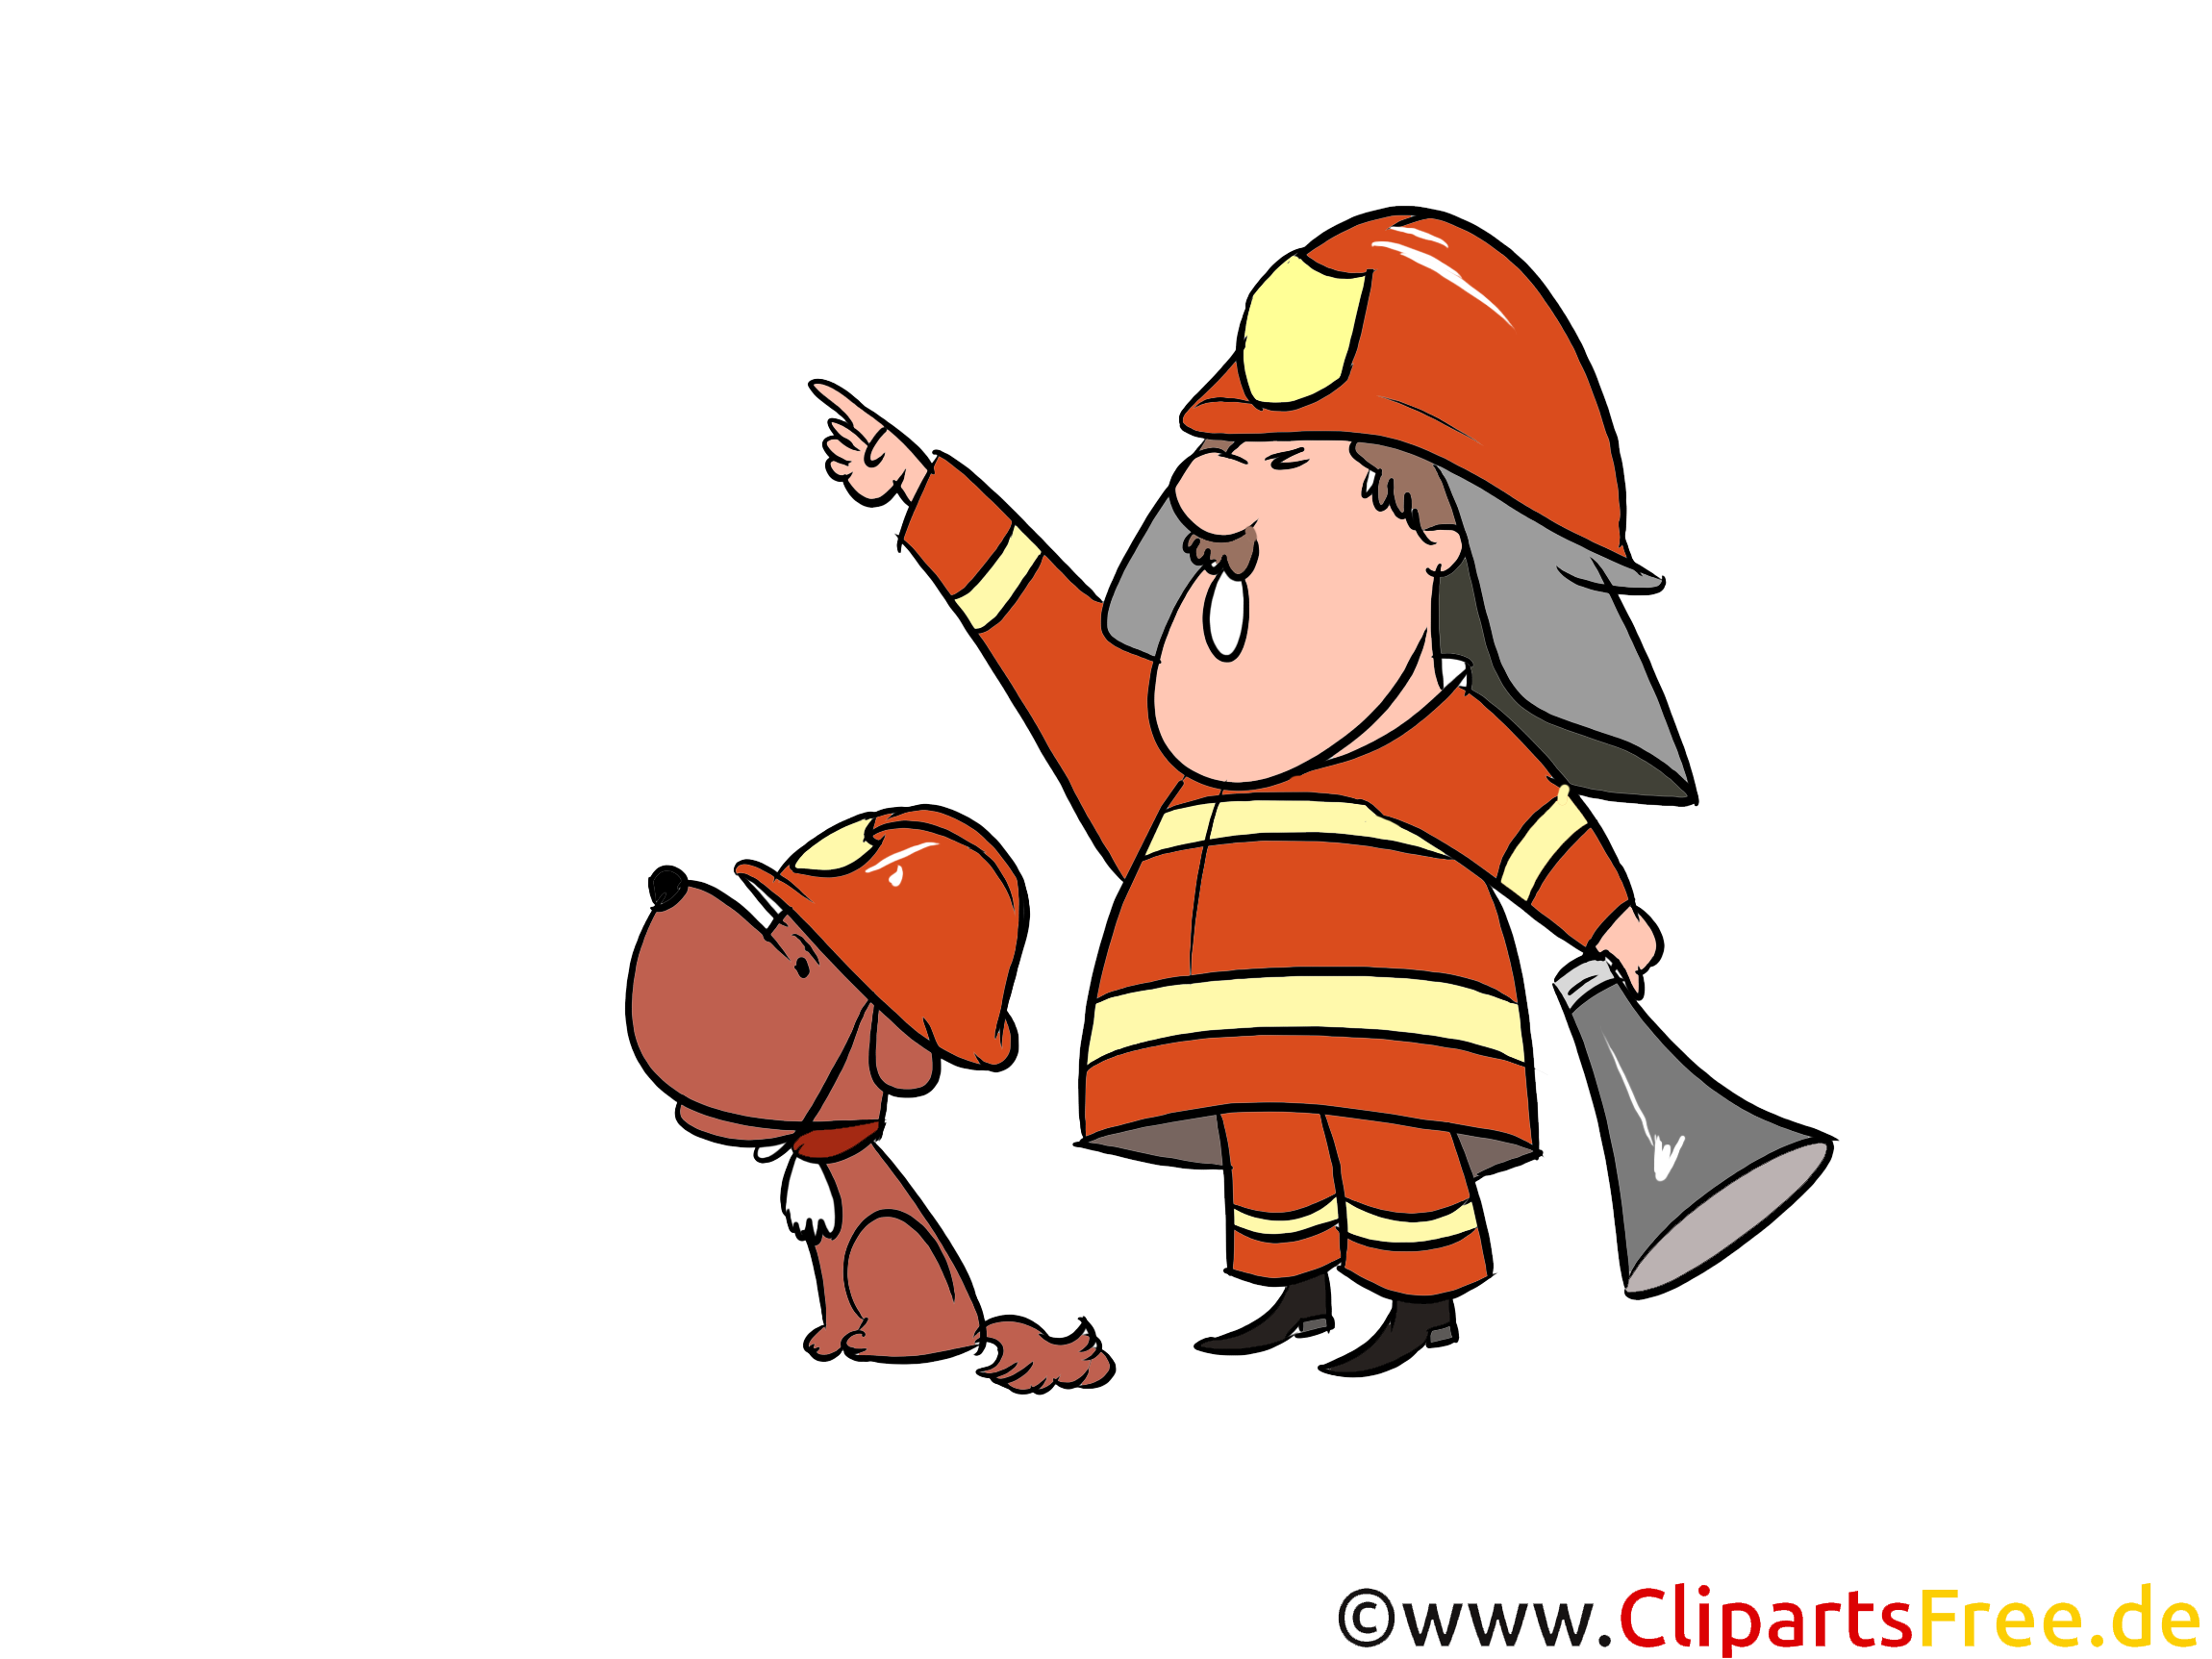 消防士犬と消防士イラスト 画像 無料クリップアート